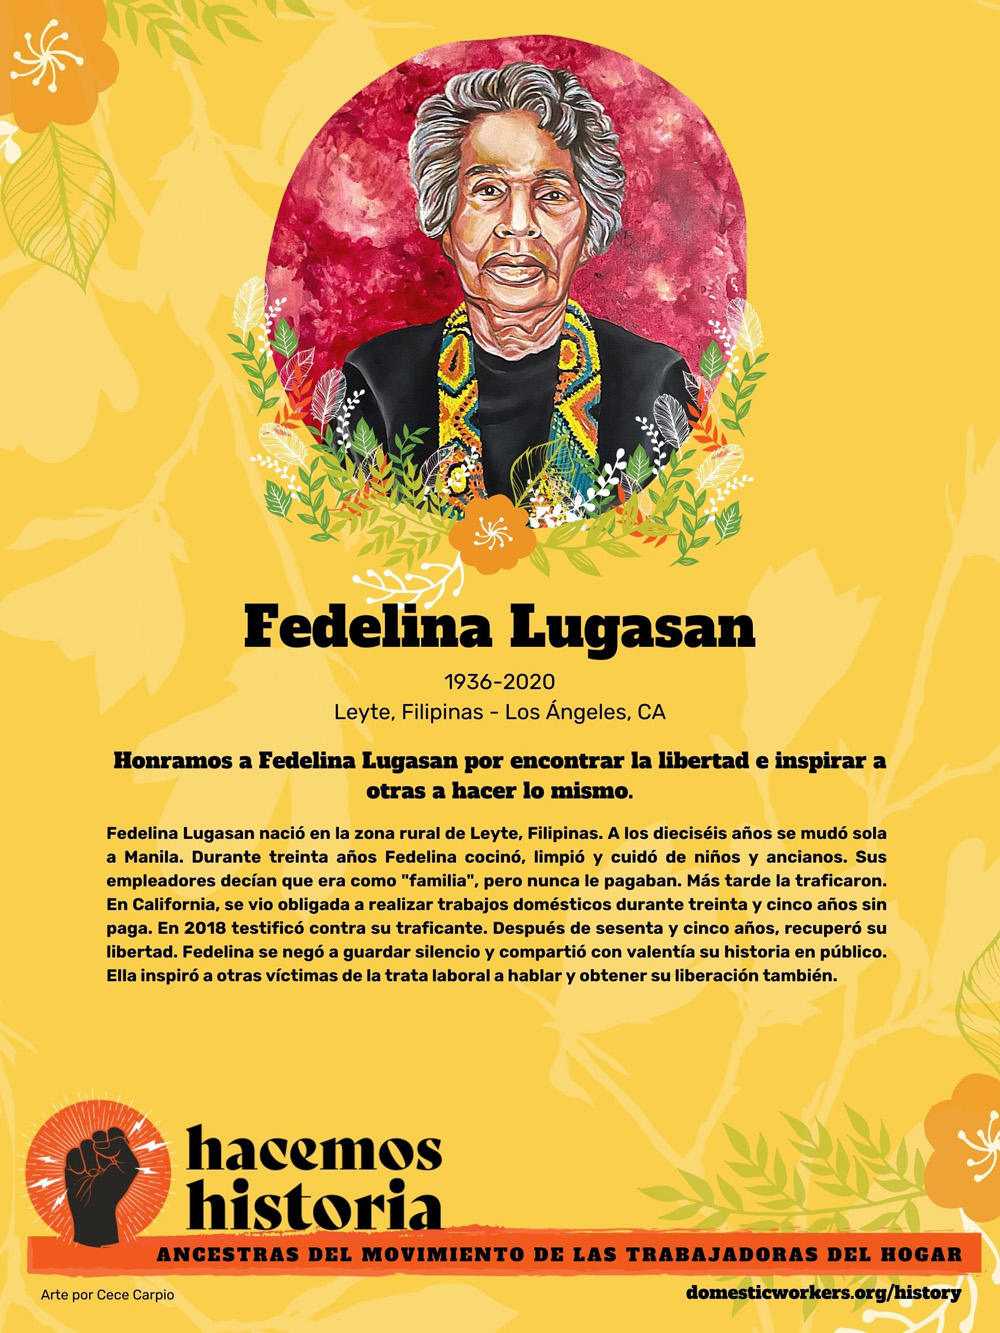 Retratos de las ancestras del movimiento de trabajadoras de hogar: Fedelina Lugasan